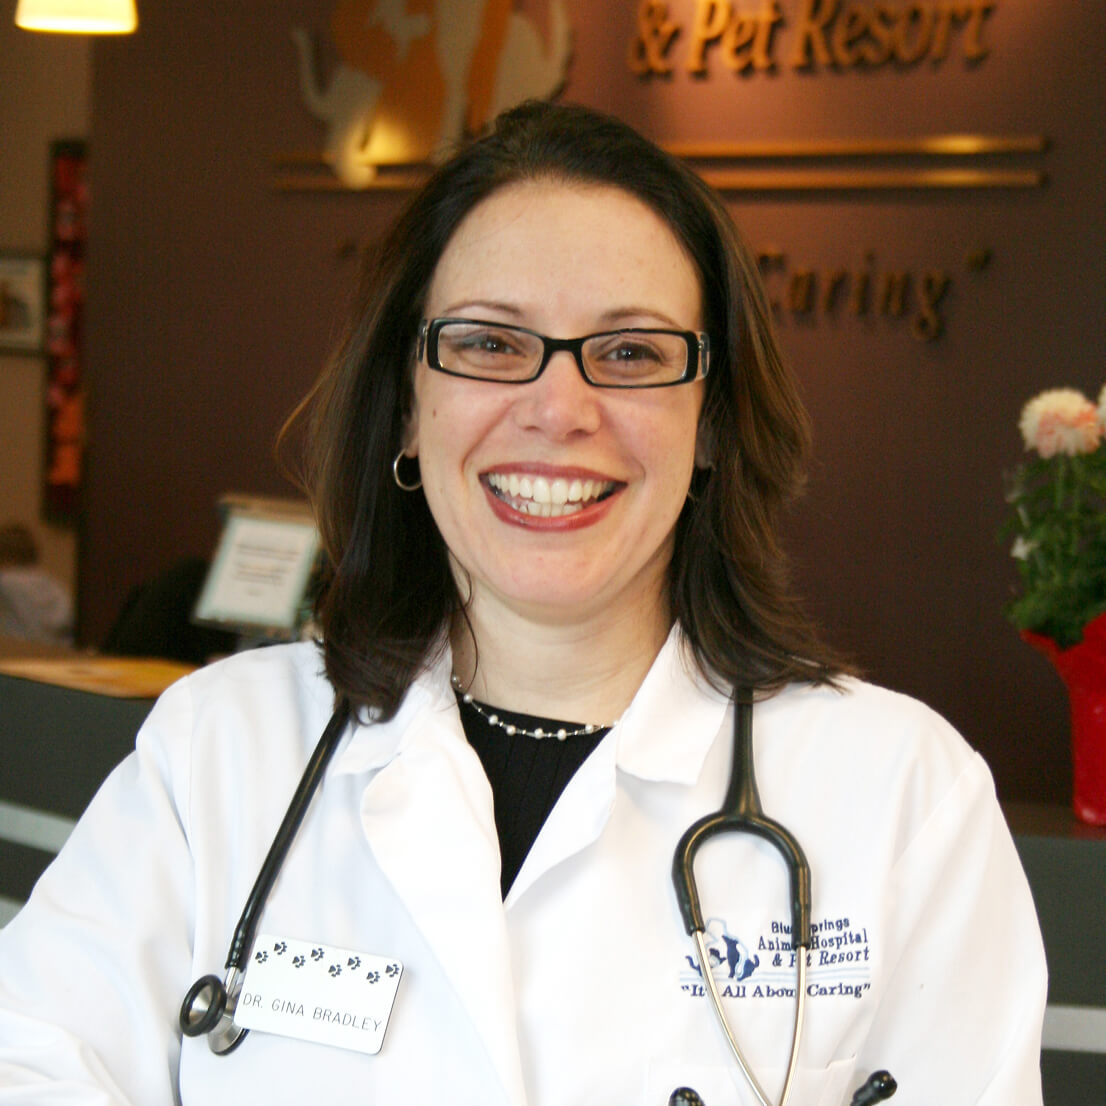 Dr. Gina Bradley